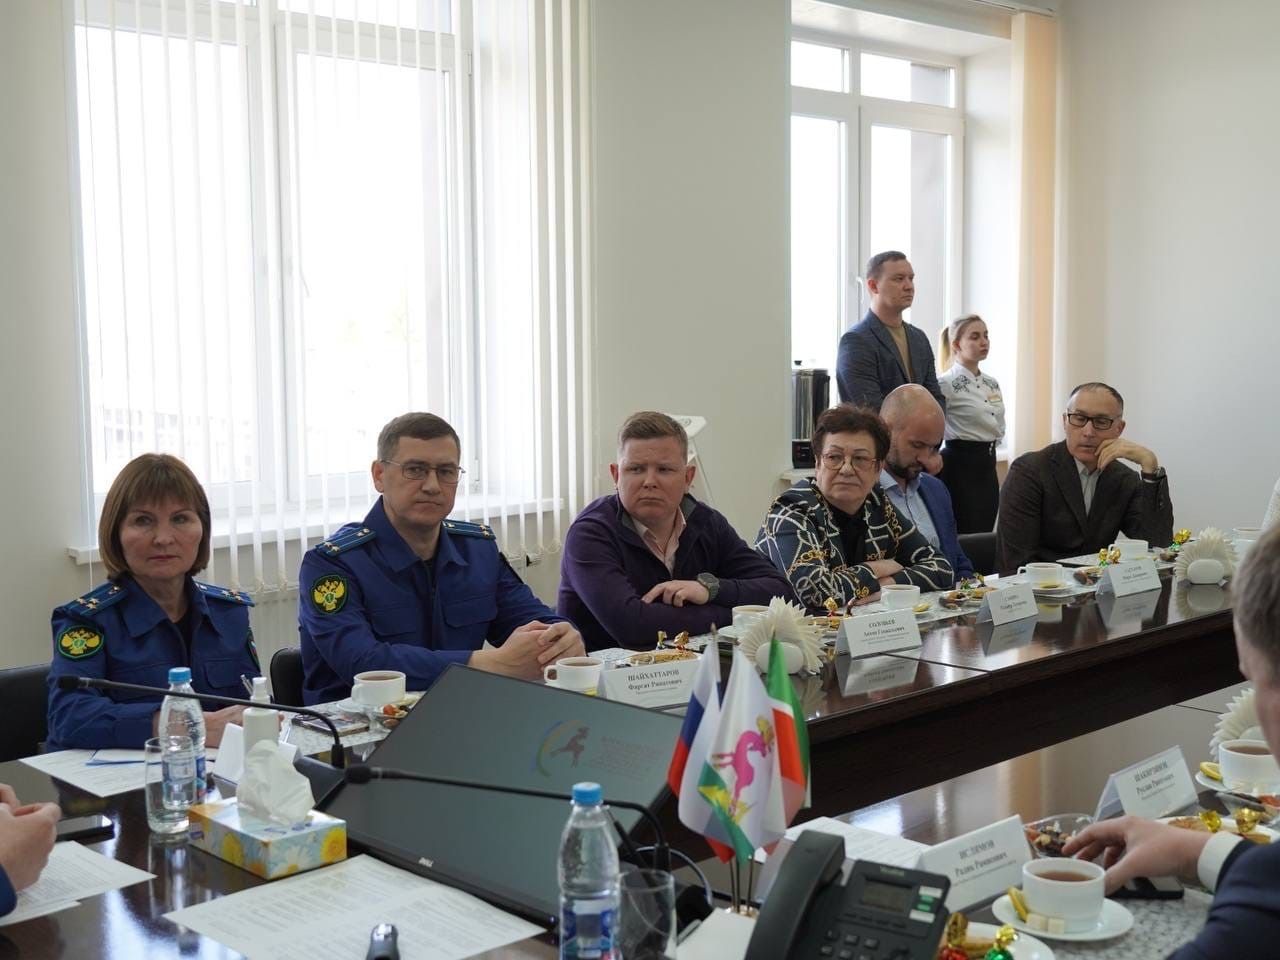 Исполняющий обязанности прокурора РТ Алексей Заика отметил позитивный предпринимательский климат на территории Алексеевского района